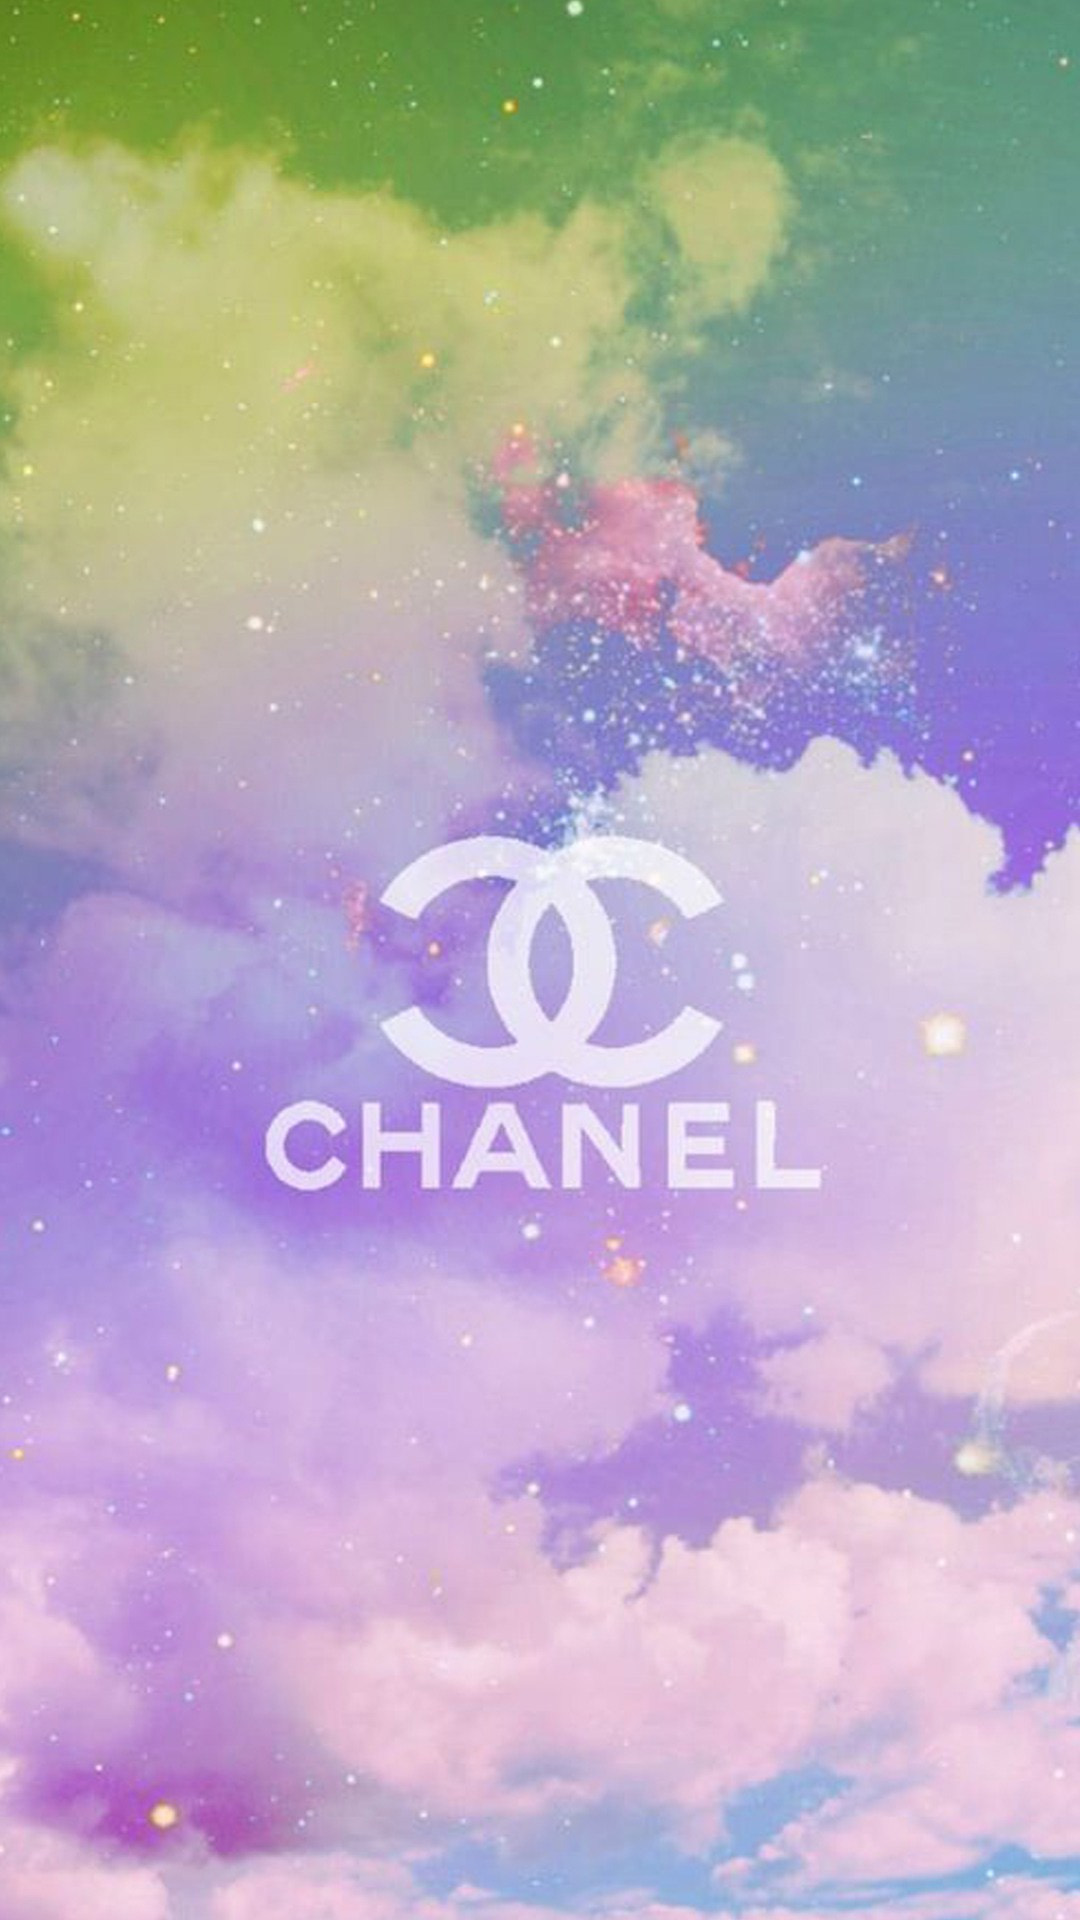 Hình nền Chanel điện thoại Iphone dành cho nữ.